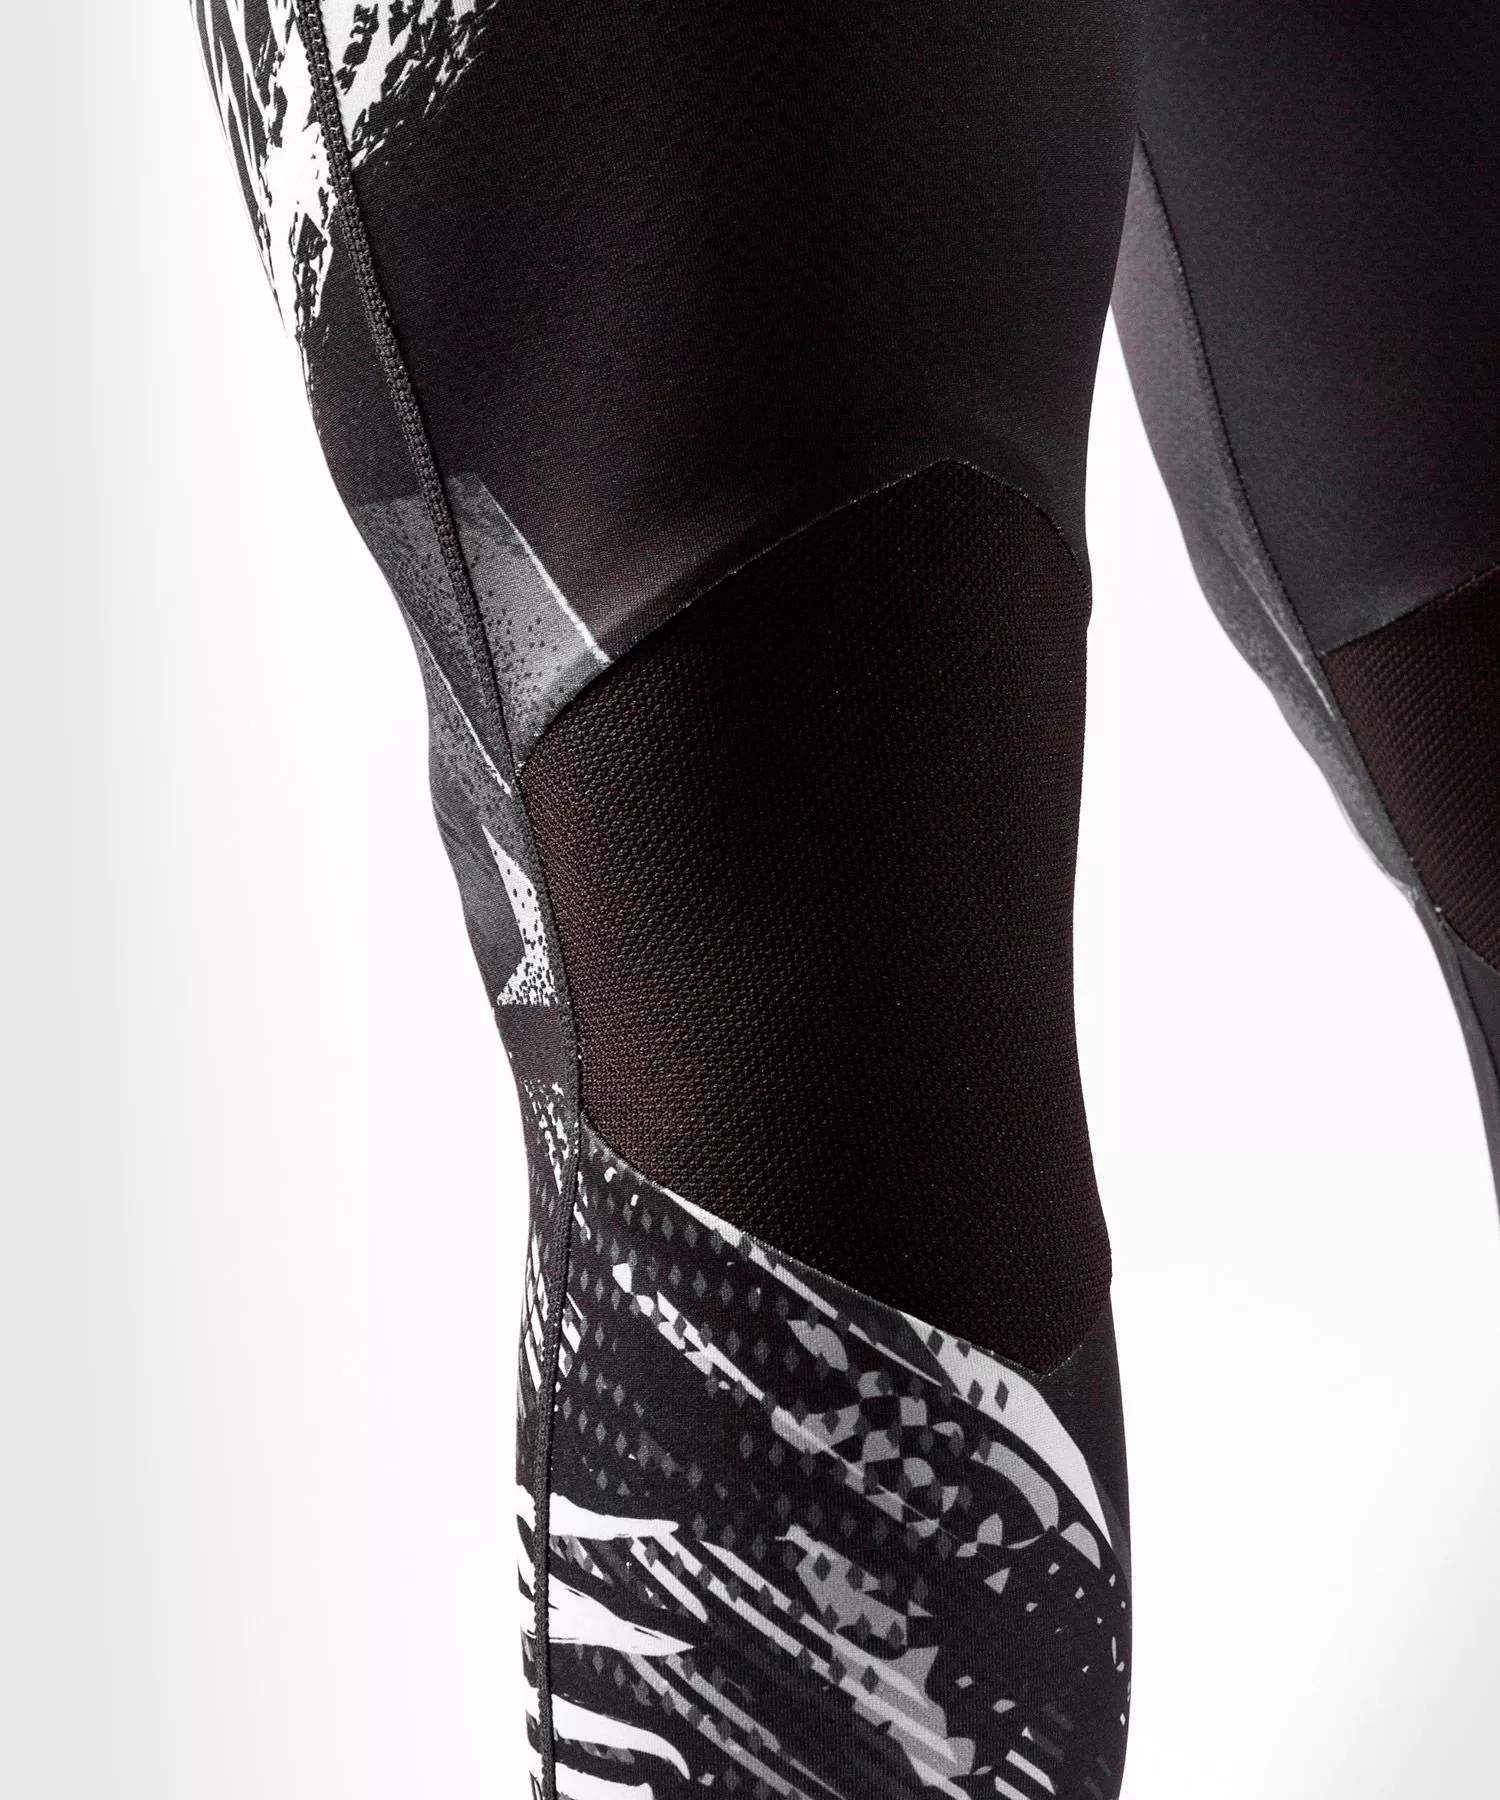 Компрессионные штаны Venum Gladiator 4.0 Compression Tights Размер: S